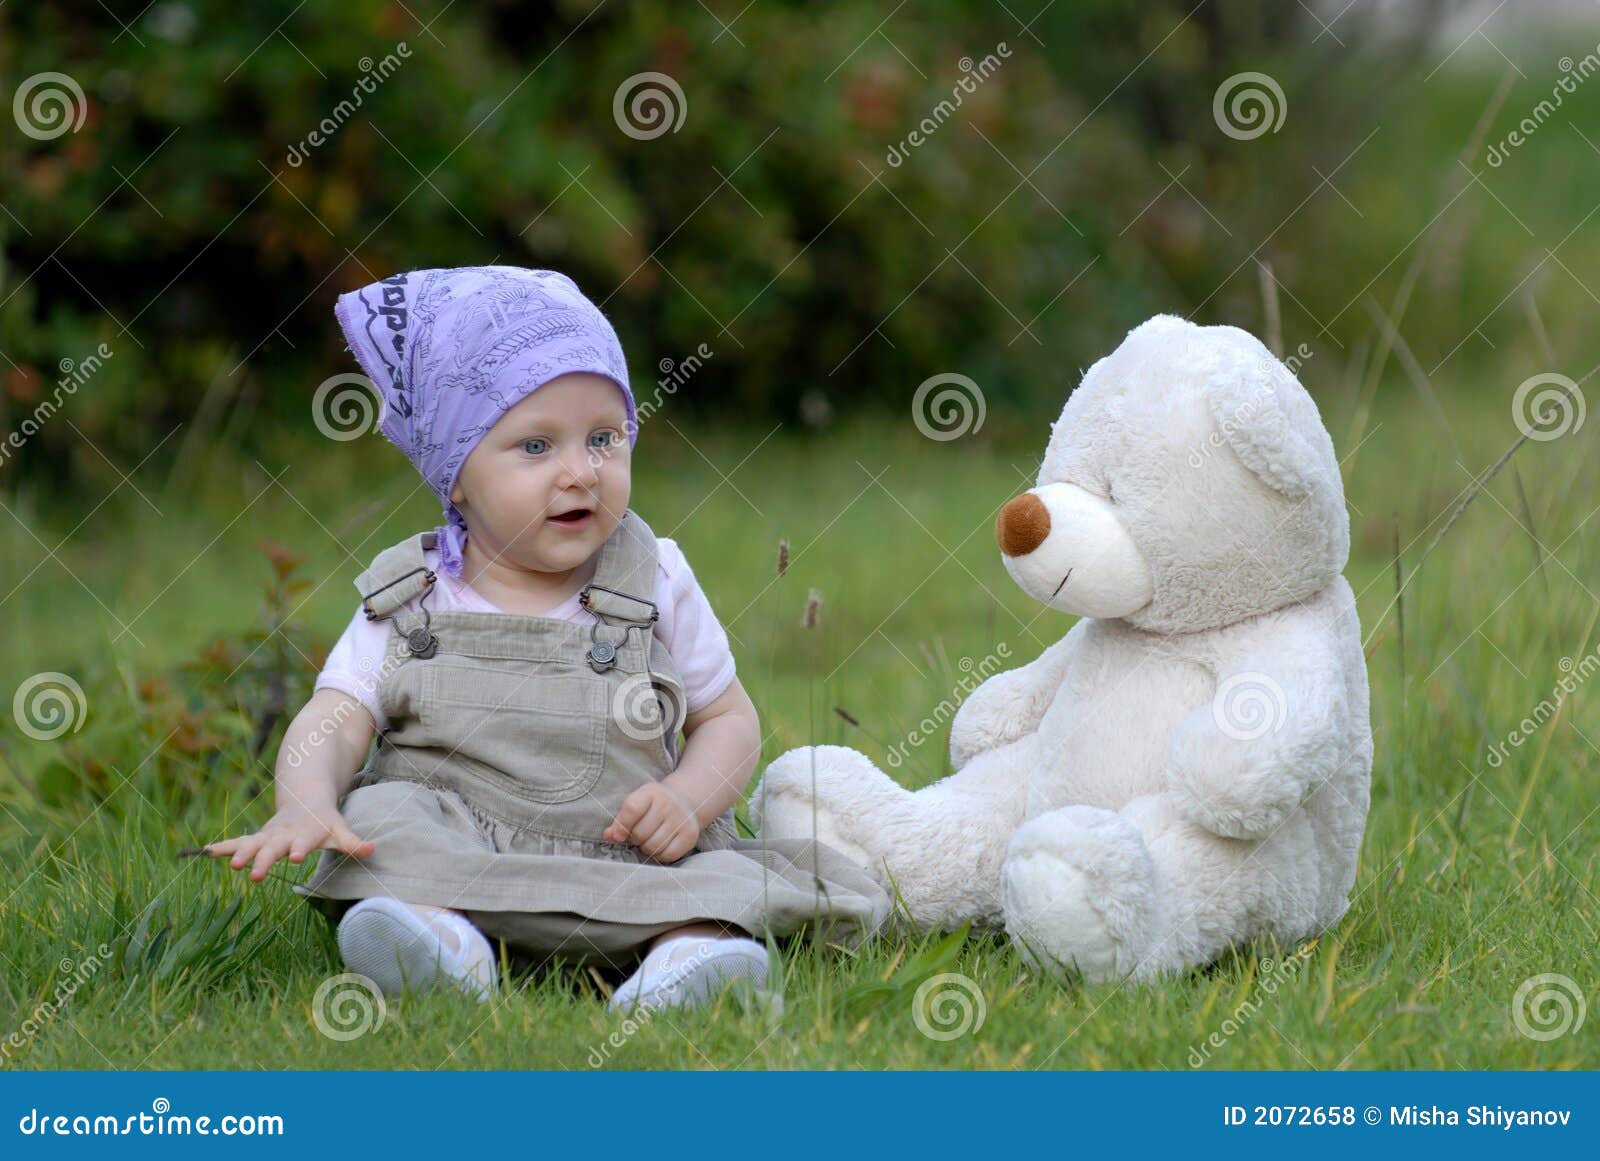 Schätzchen auf dem Gras mit einem Bärenspielzeug